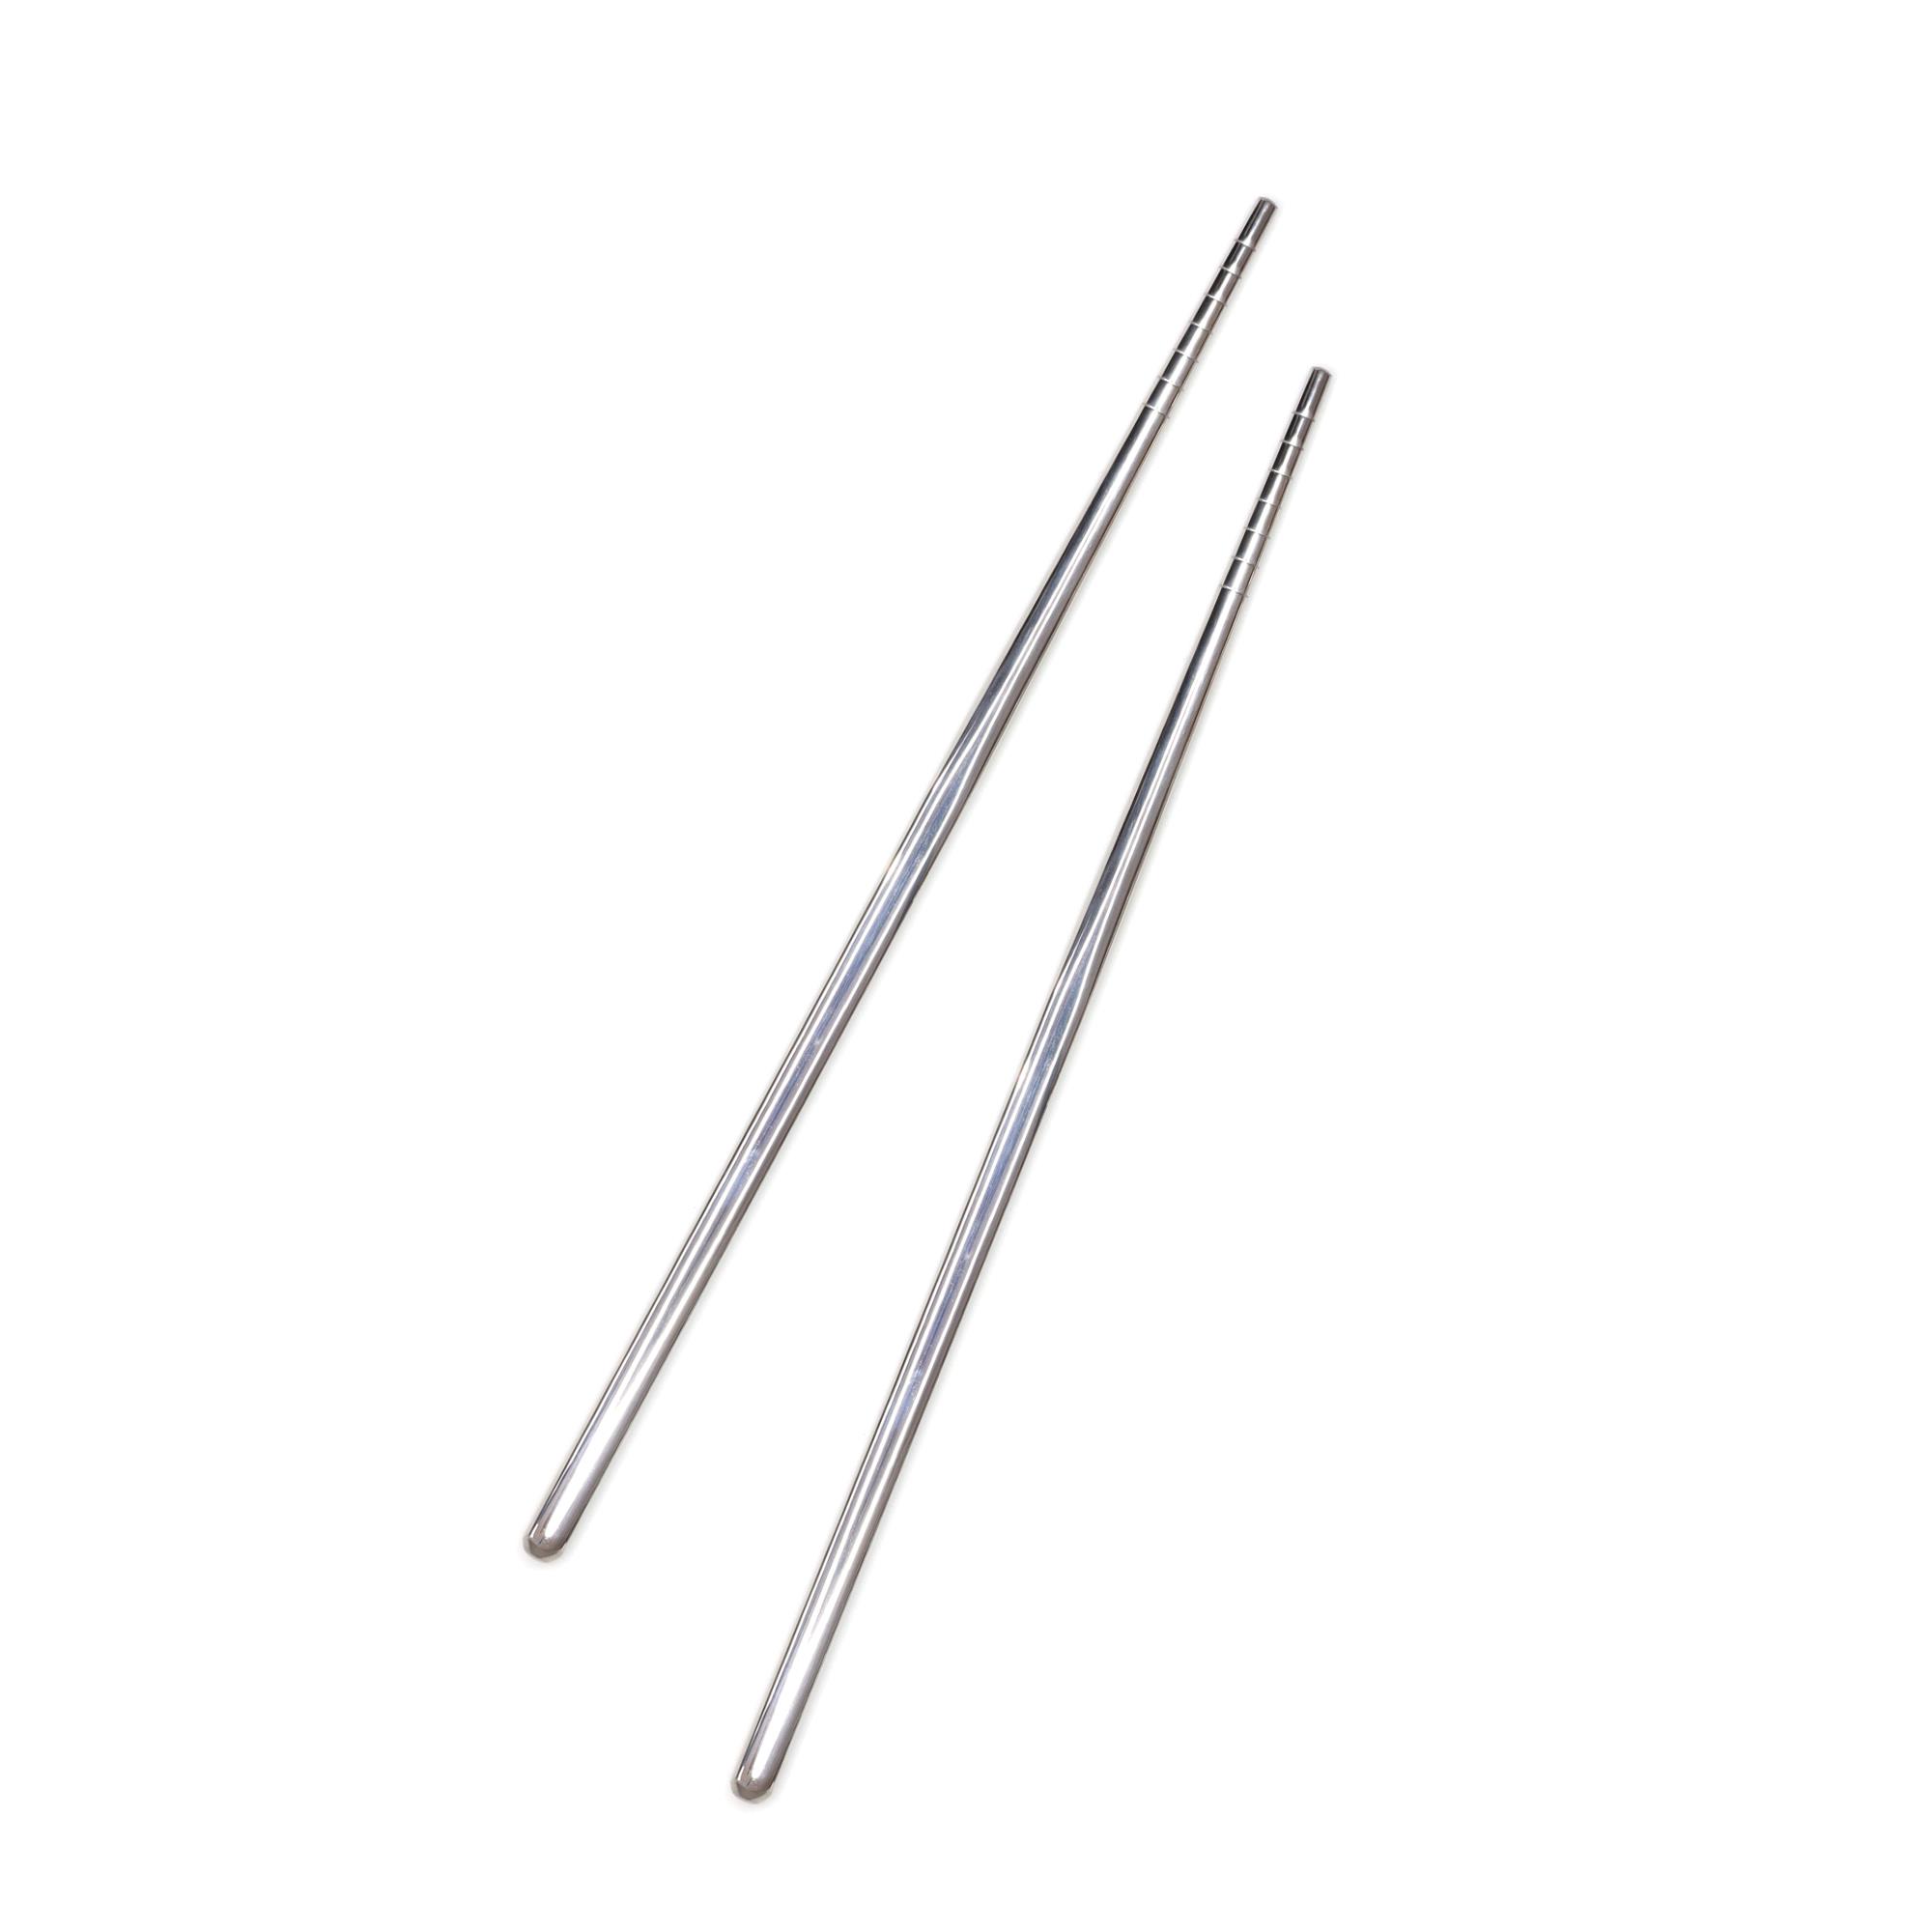 Çok Kullanımlık Paslanmaz Çelik Çin Çubuğu Spiral (Chopsticks) 22,5 cm - 2 Adet